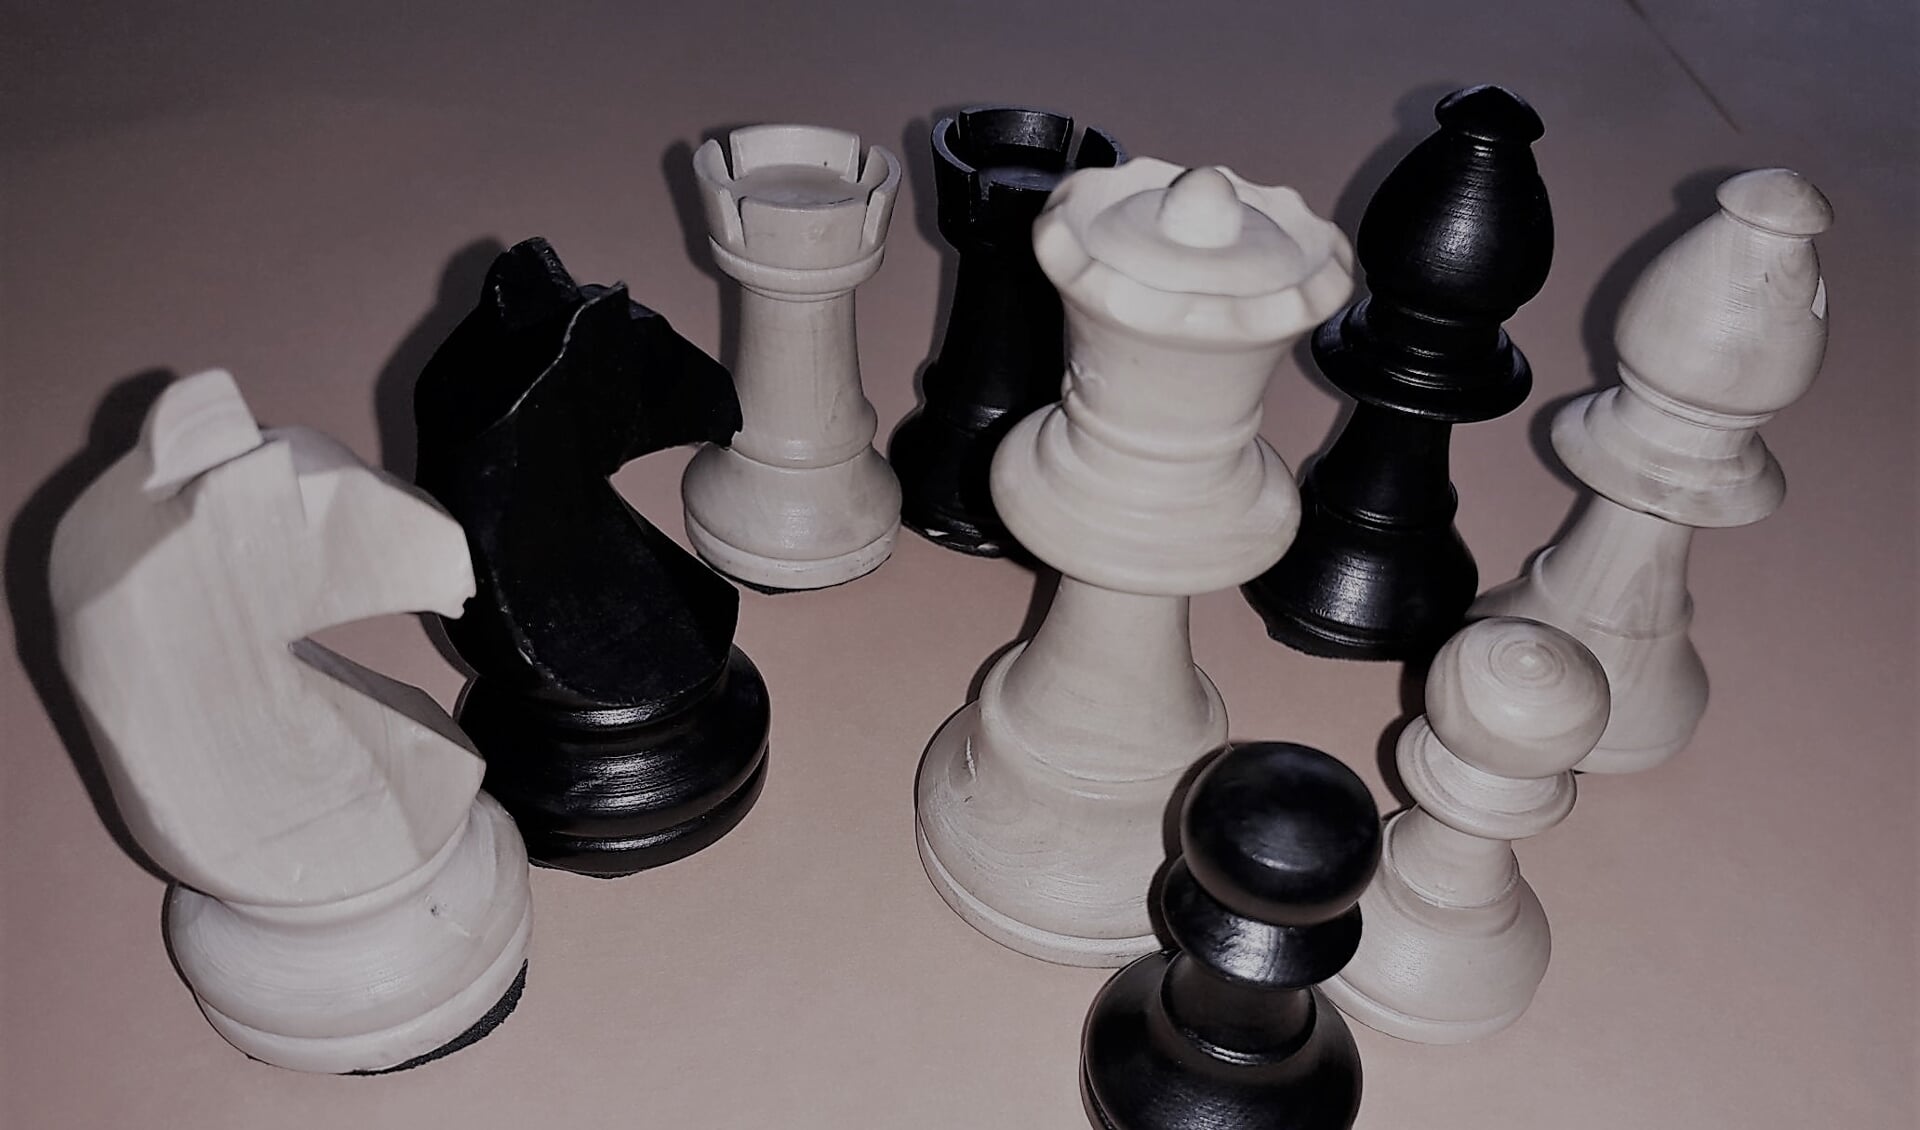 Verschillende schaakstukken, met centraal de koningin. FOTO BERNADETTE EGERIC